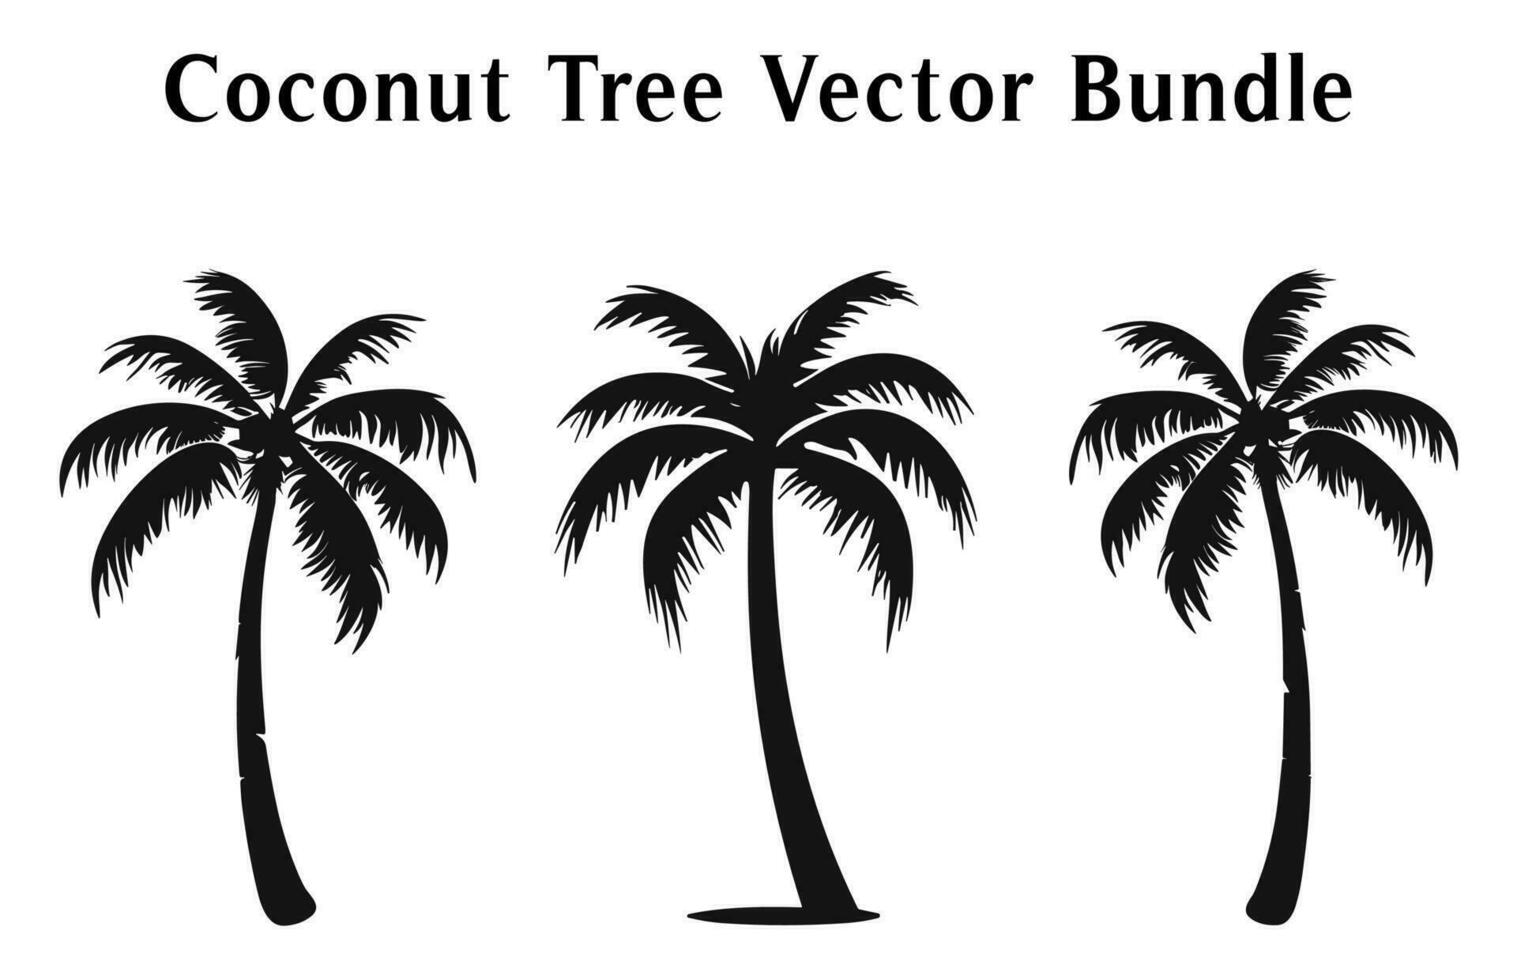 Coco arboles silueta vector gratis, Coco árbol siluetas haz